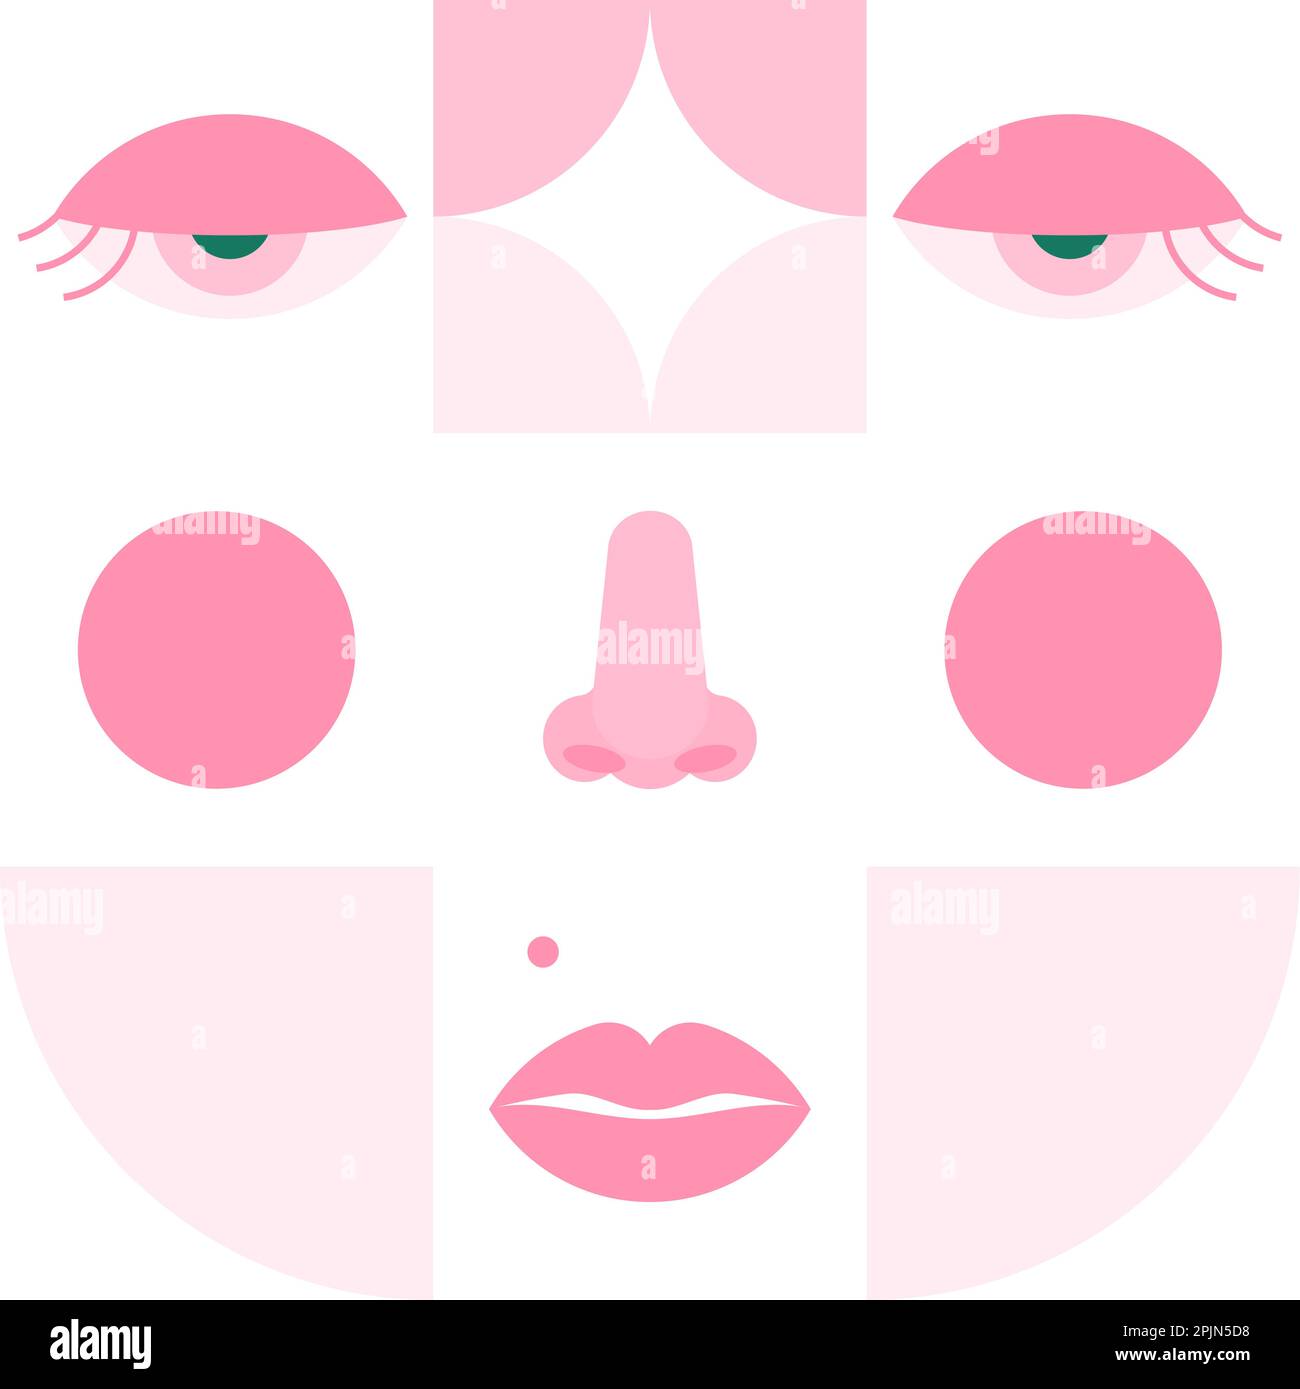 Face.Girl Face geometrico femminile con naso, labbra piercing. Illustrazione neo Geo Style. Modello moderno con occhio, naso e labbra. Illustrazione vettoriale Illustrazione Vettoriale